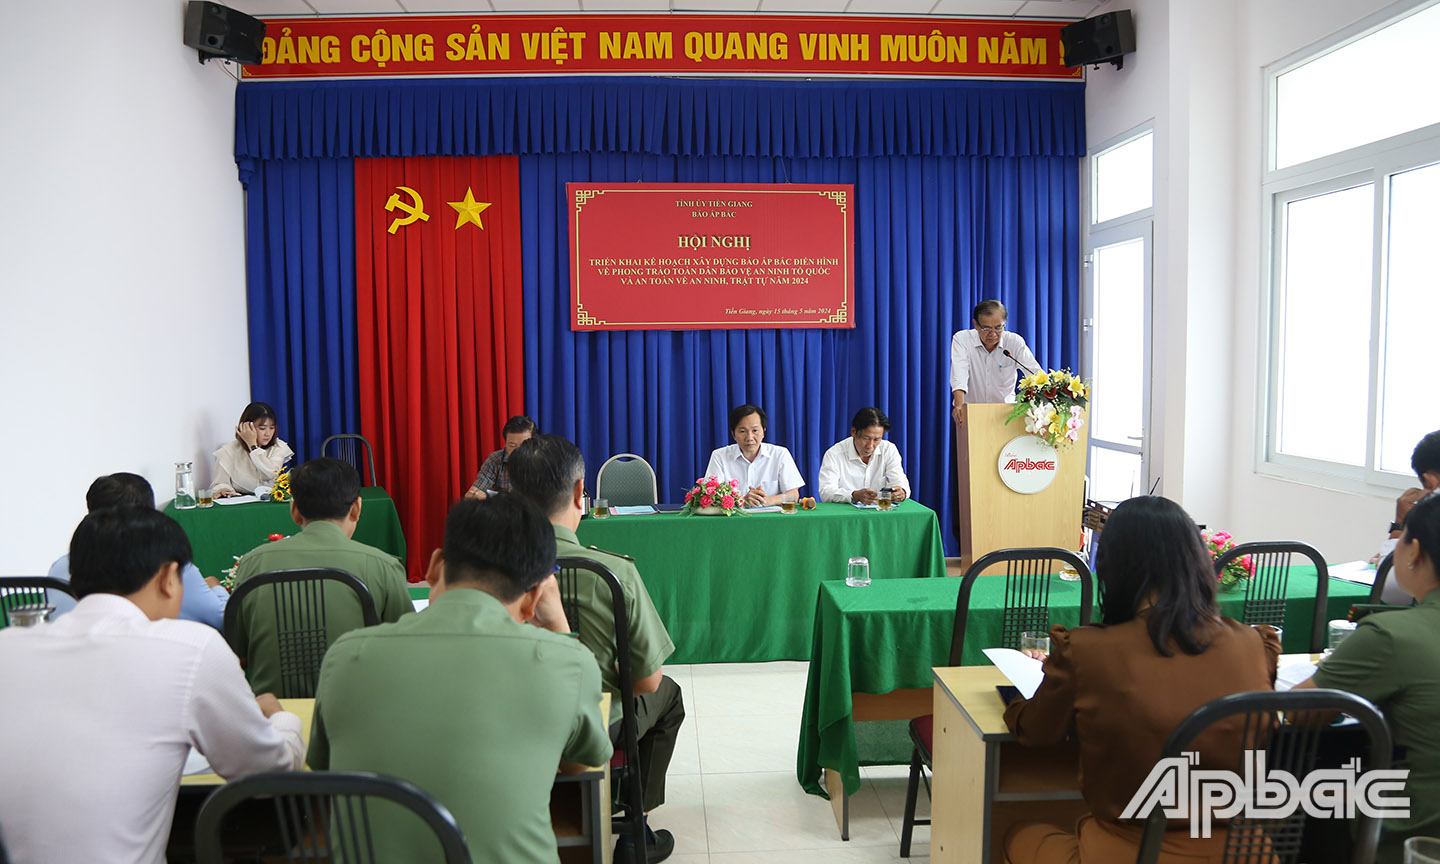 Tổng Biên tập Báo Ấp Bắc Nguyễn Minh Tân kết luận và đáp từ hội nghị.